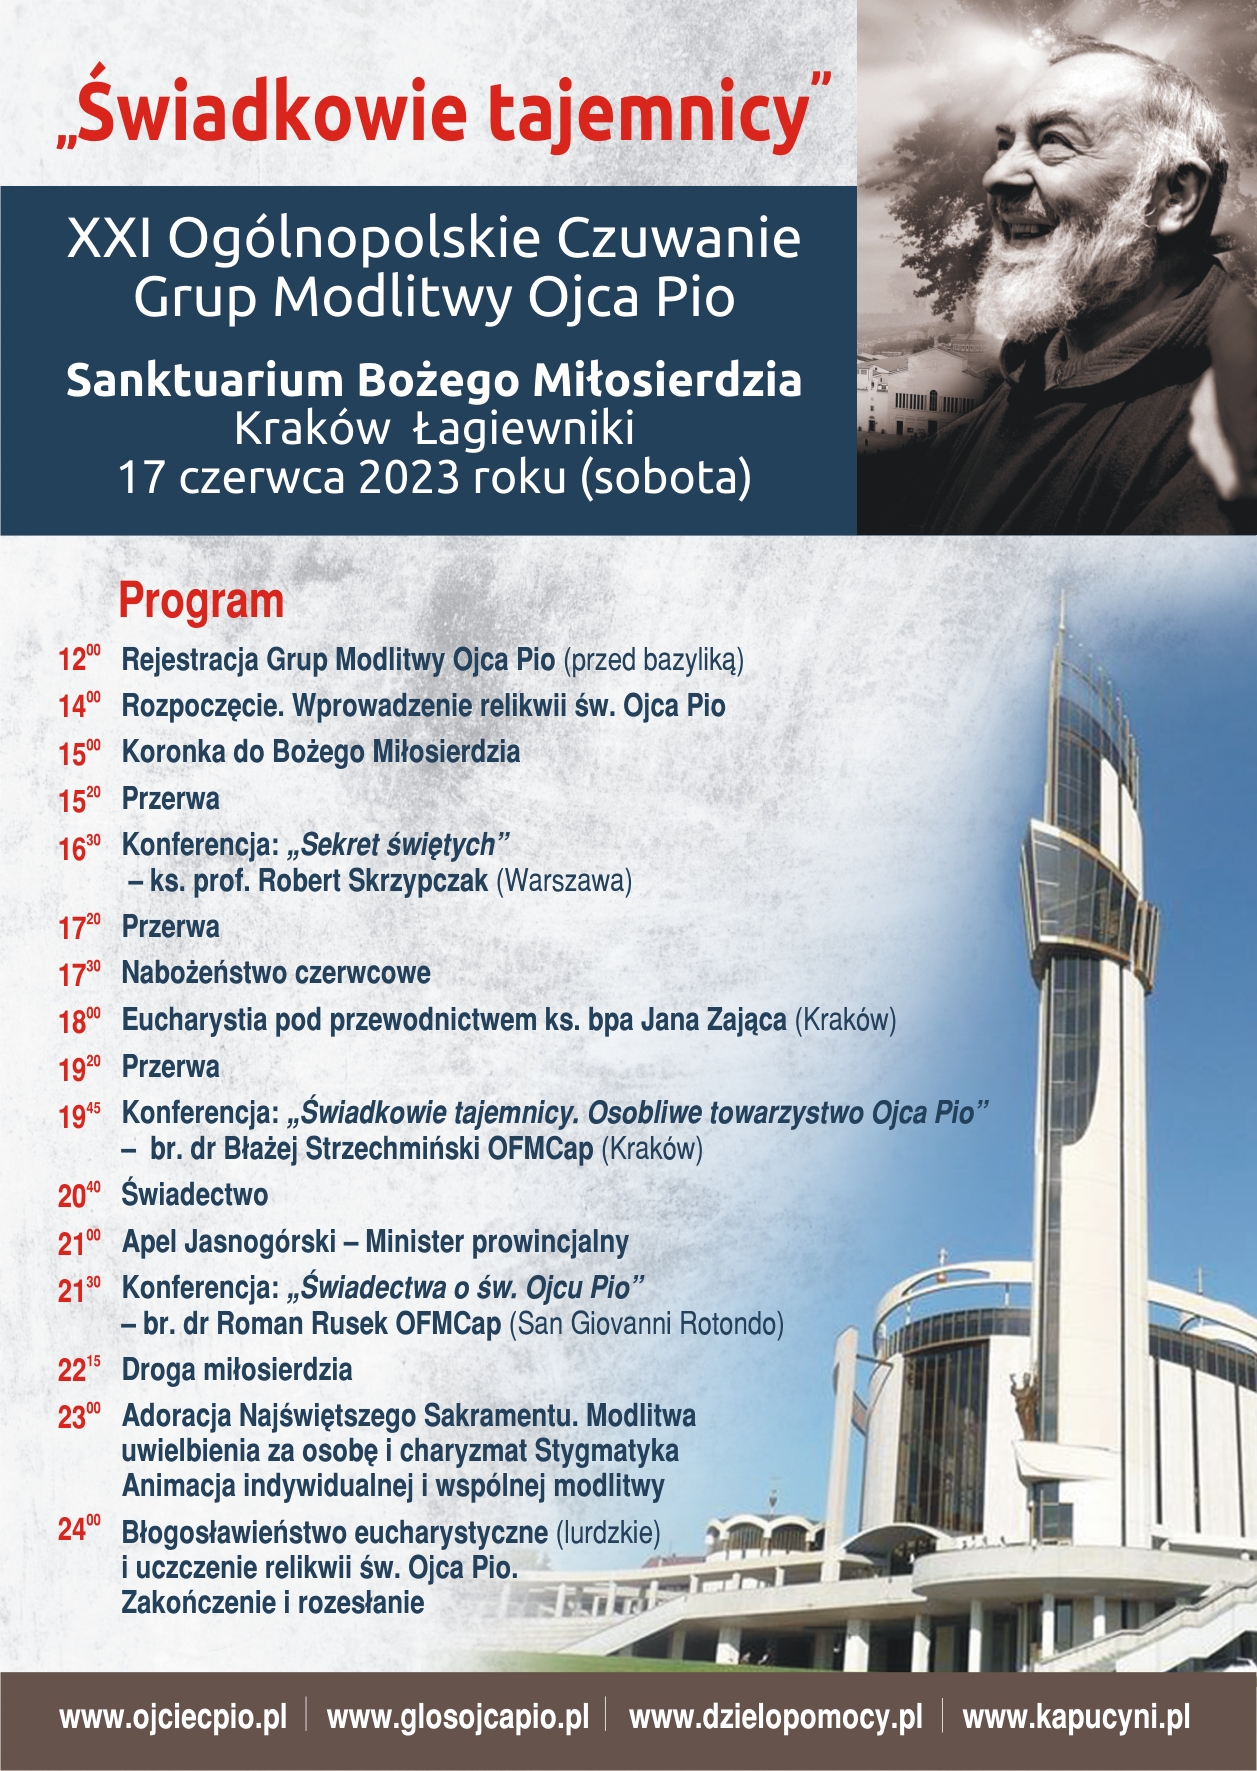 XXI Ogólnopolskie Czuwanie Grup Modlitwy Ojca Pio w Krakowie Łagiewnikach